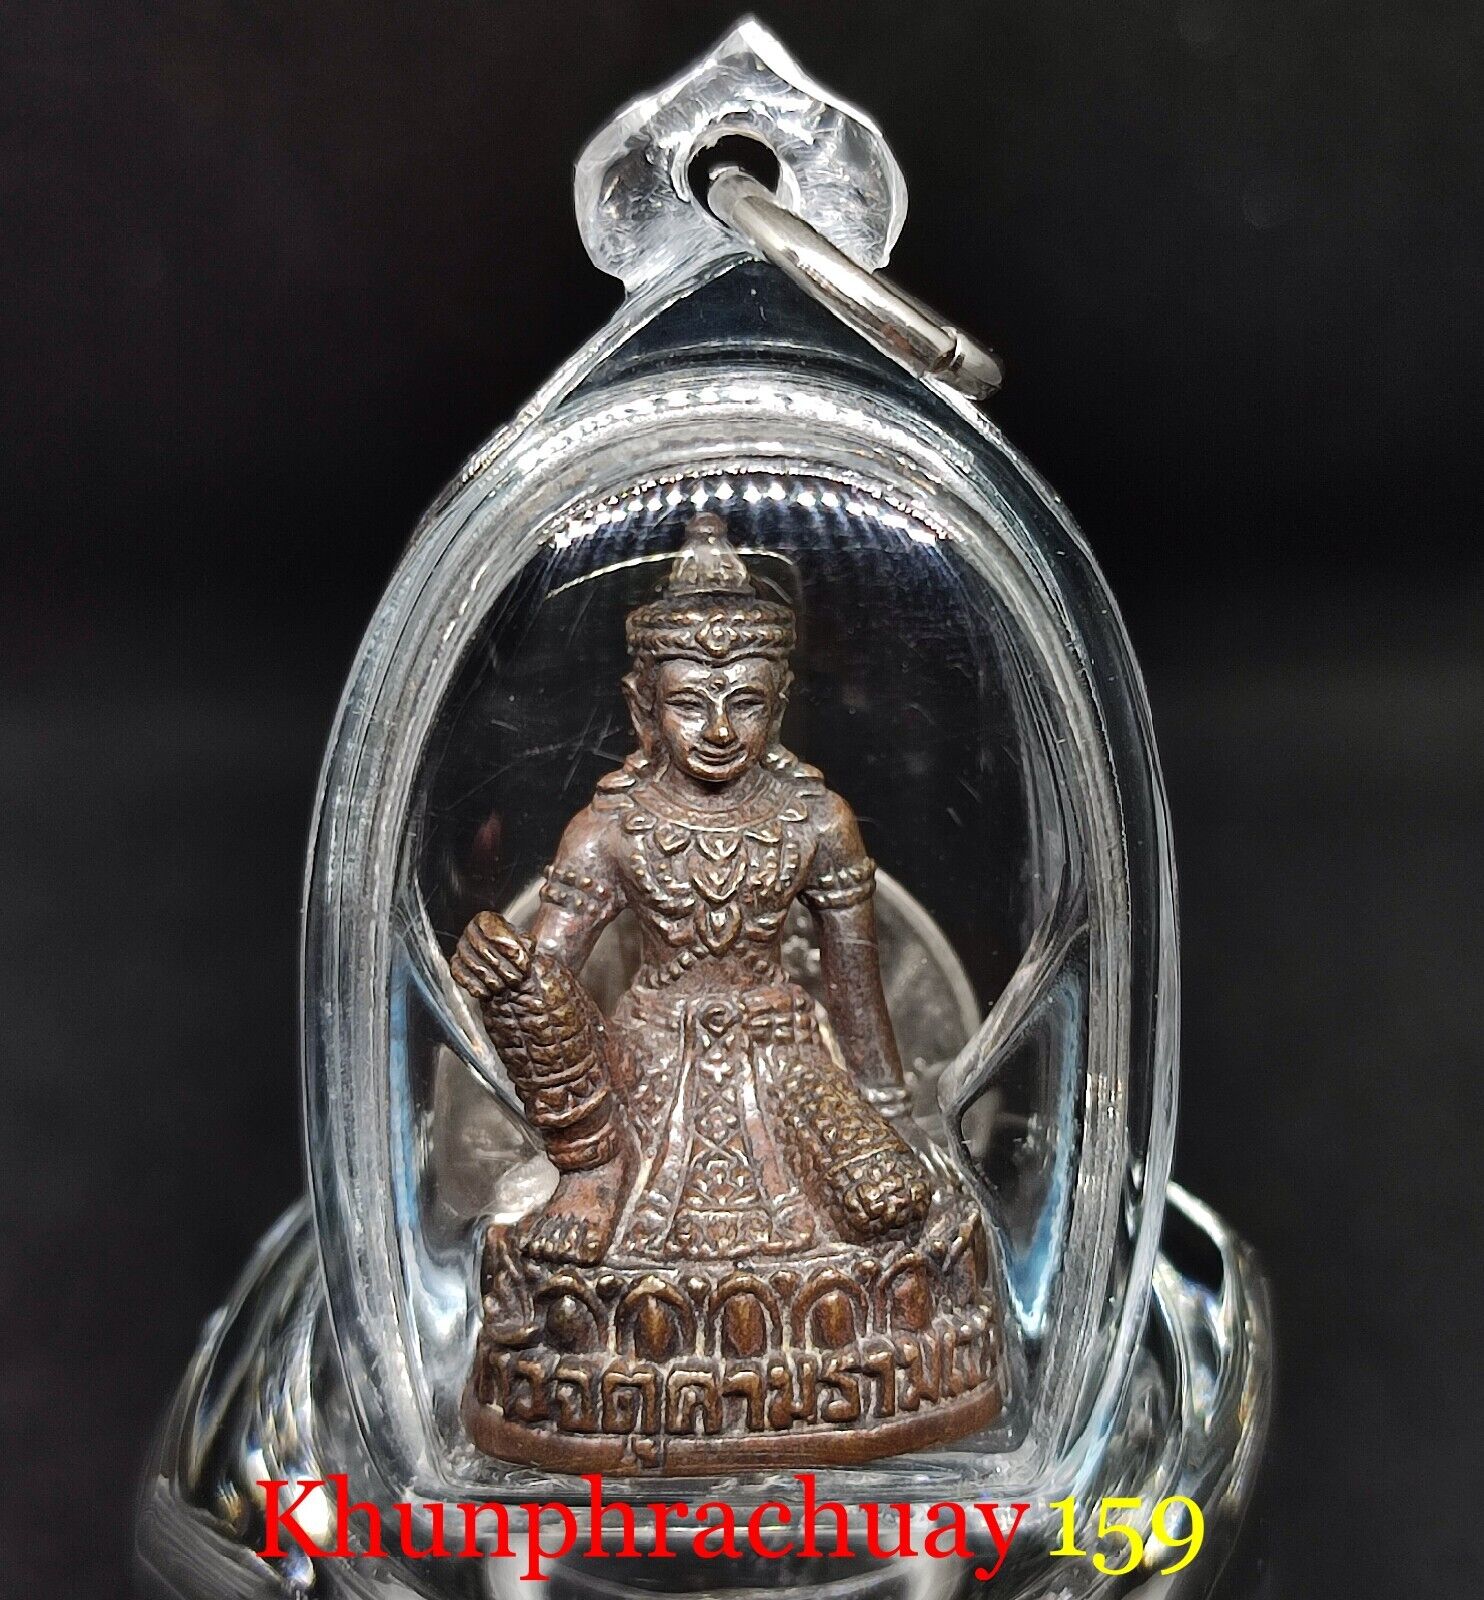 Blessed Thai Amulet Phra Gring Thewa Bodhisattva Jatukham Ramathep (Nawaloha) 